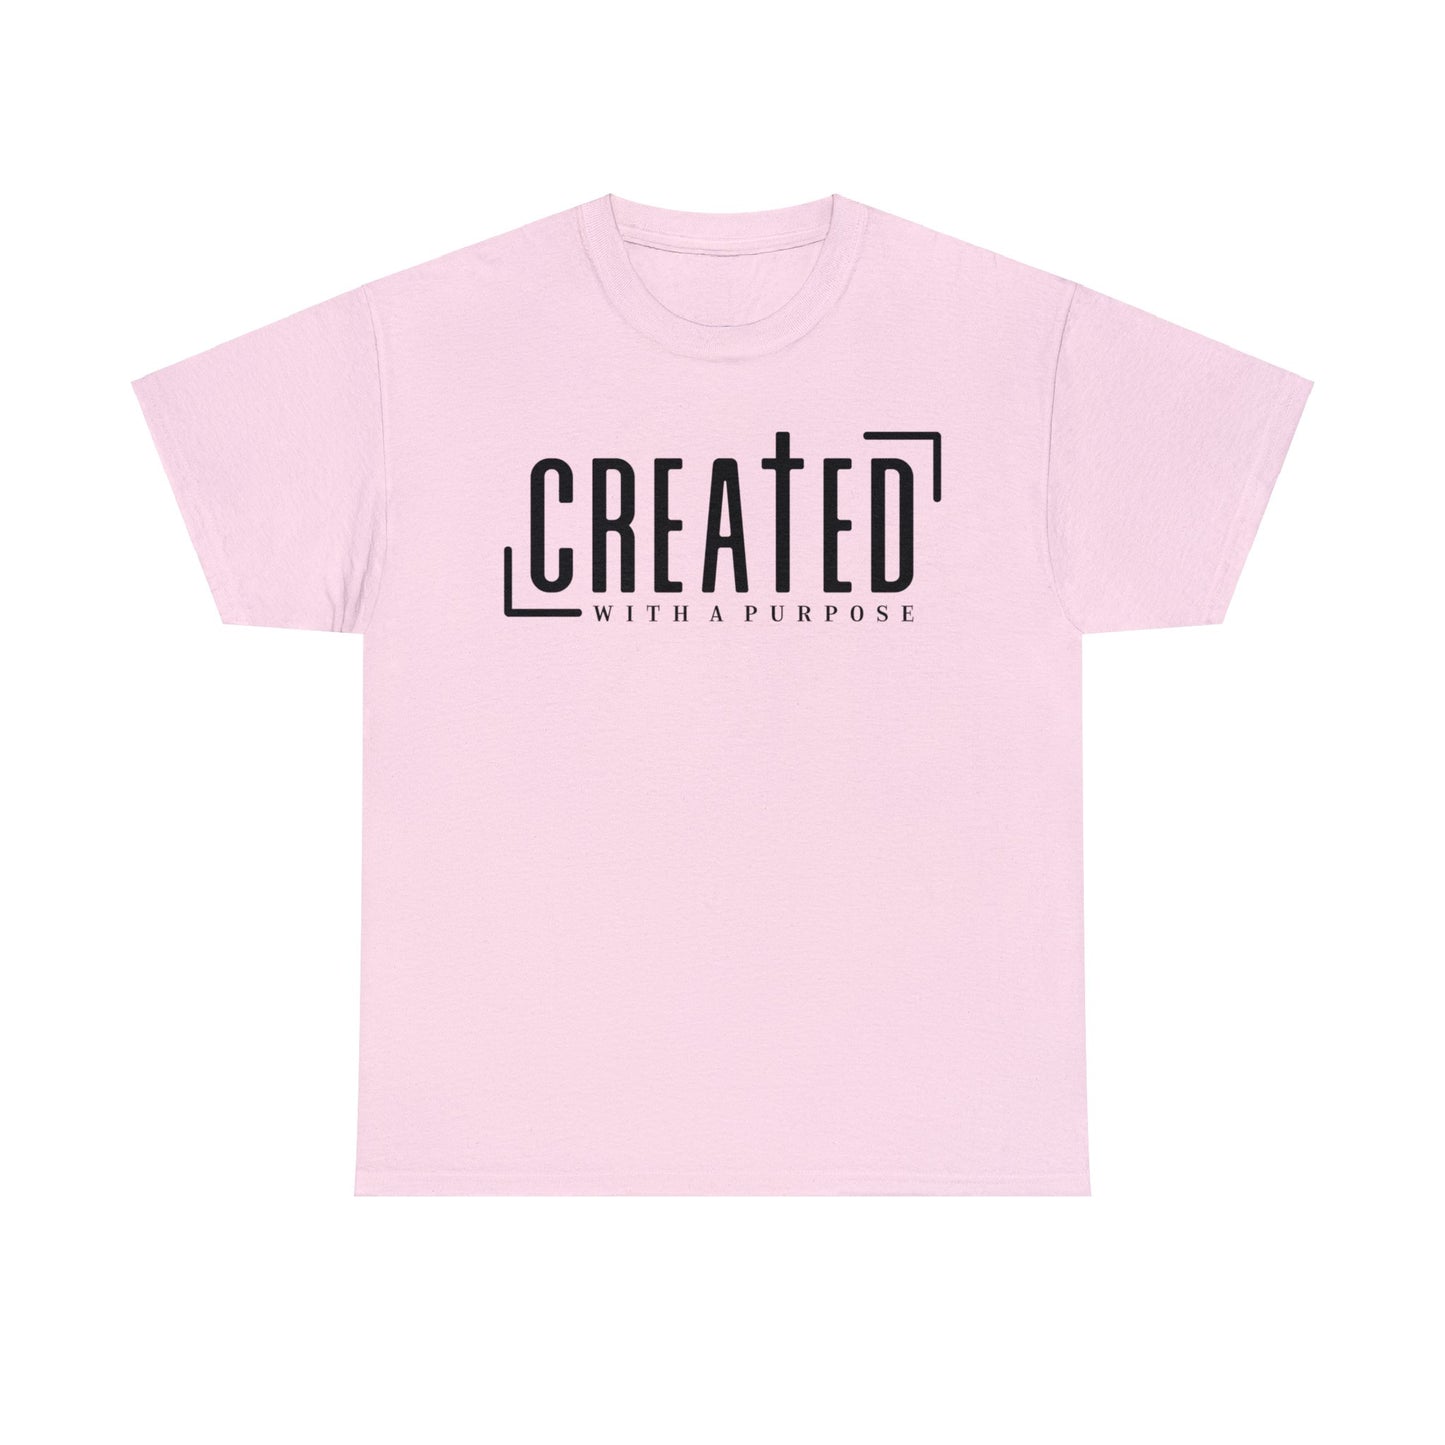 Created With A Purpose Shirt, Christian Shirt, Religious Shirt, Faith Tee (Faith-23)